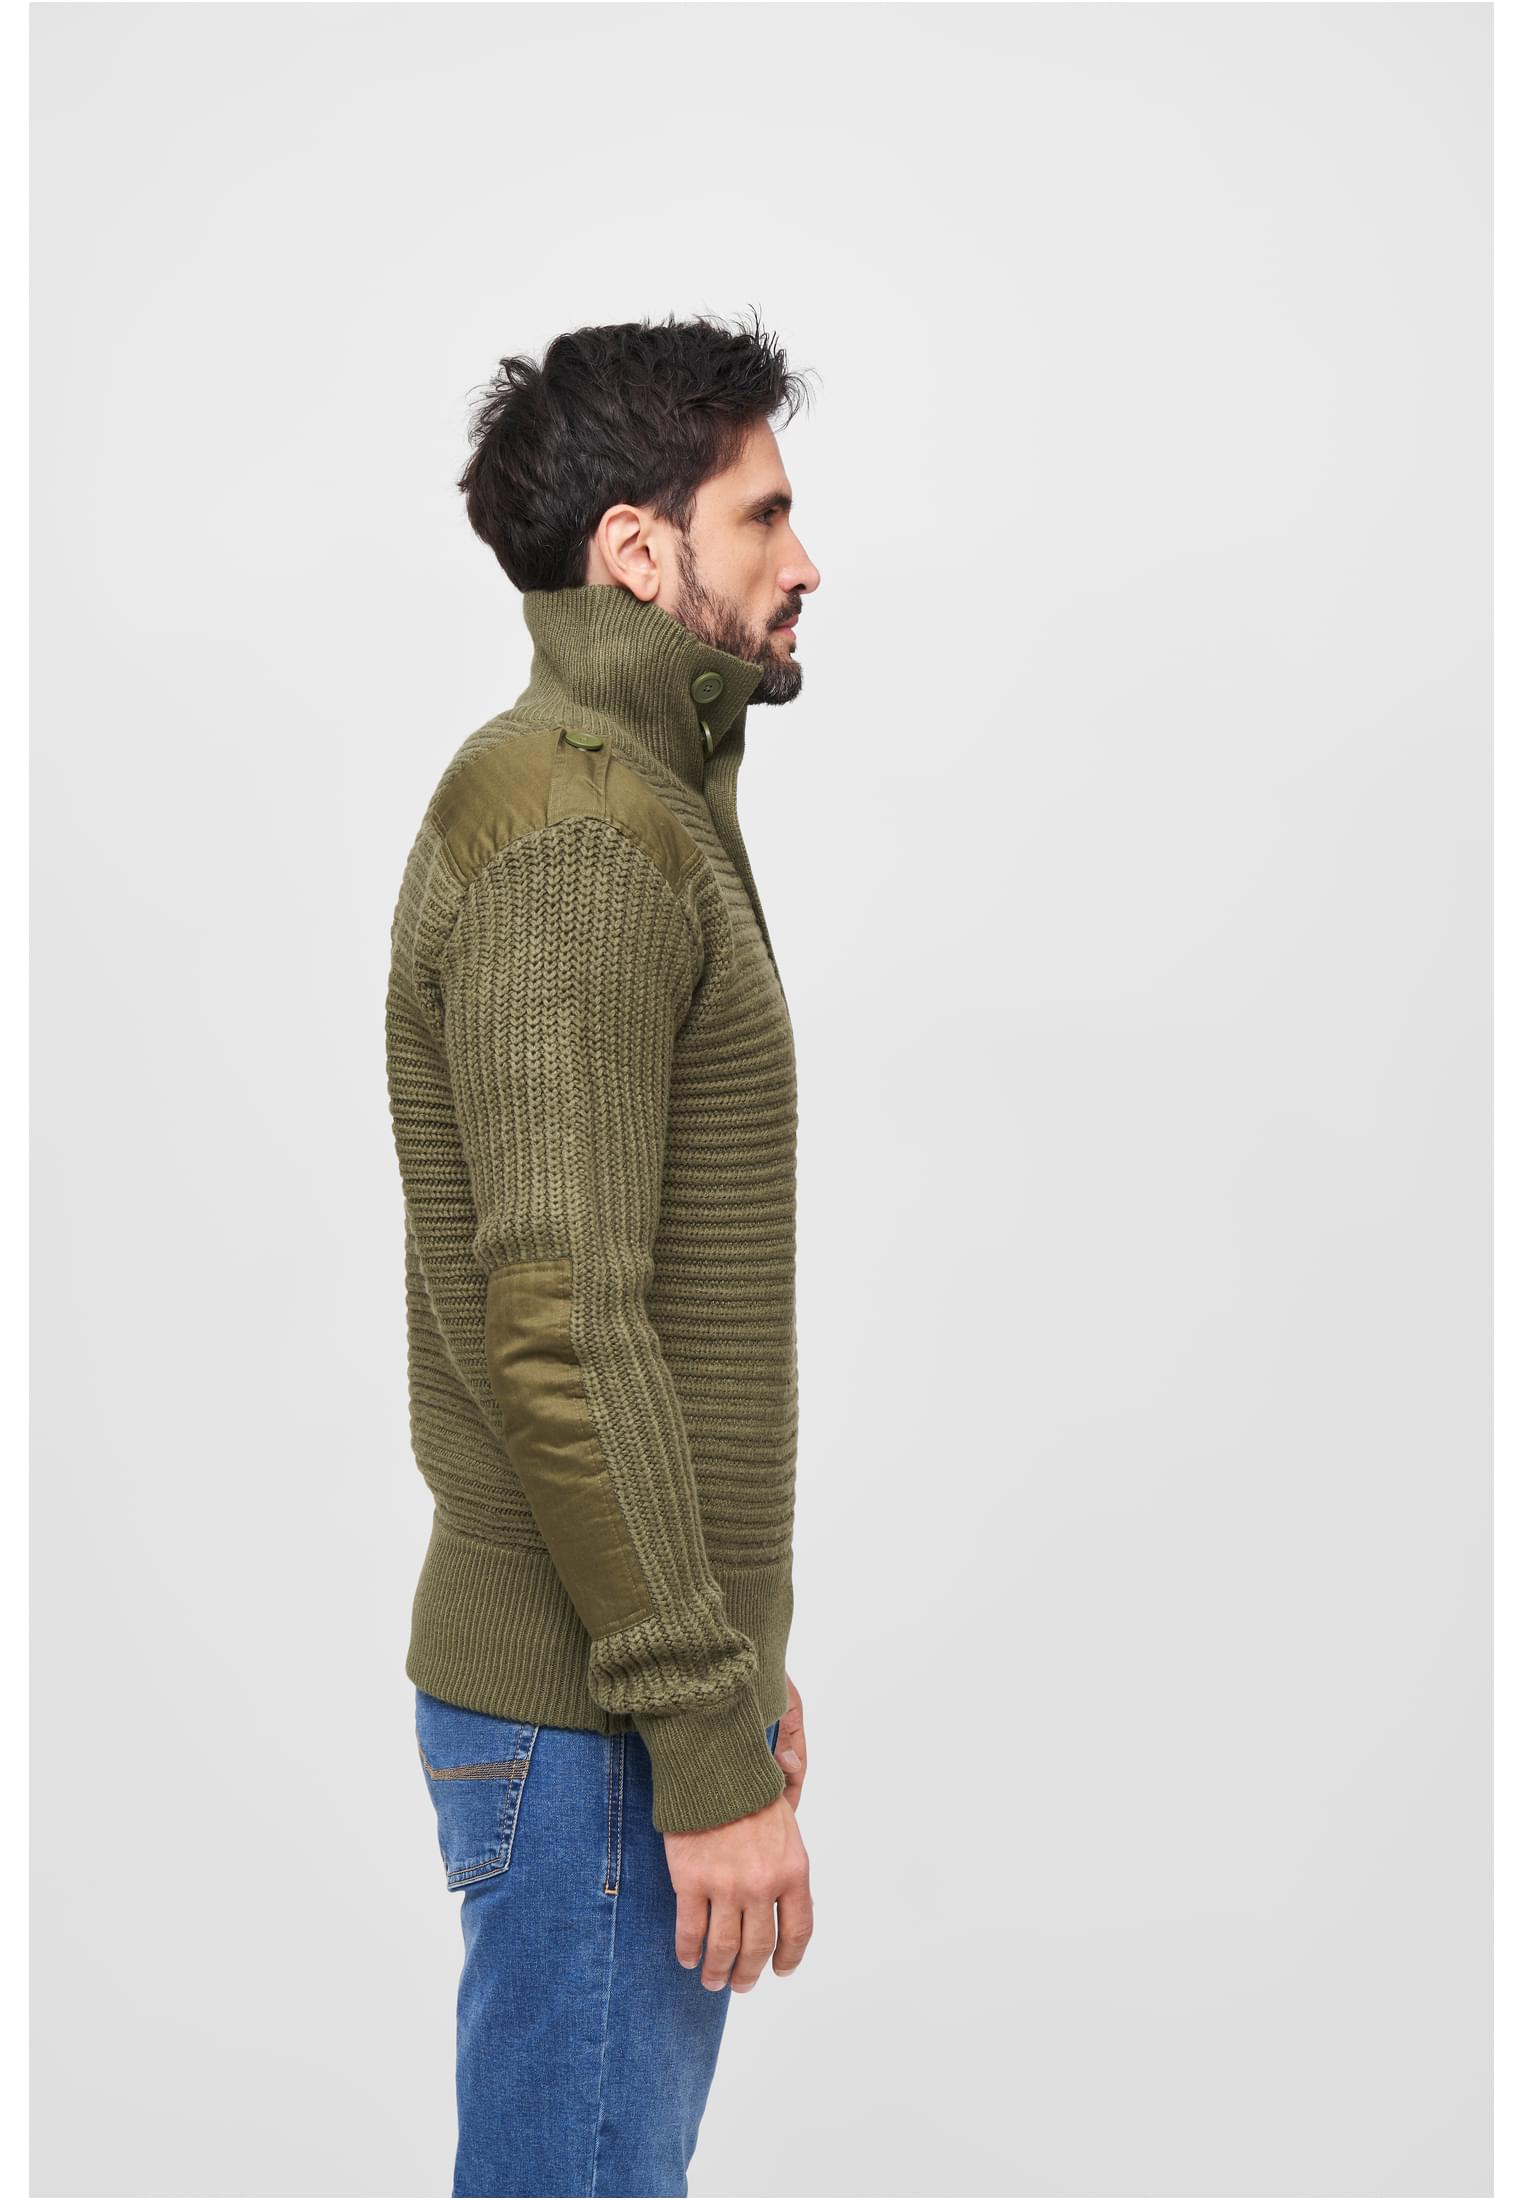 Pullover Alpin Pullover in Farbe olive